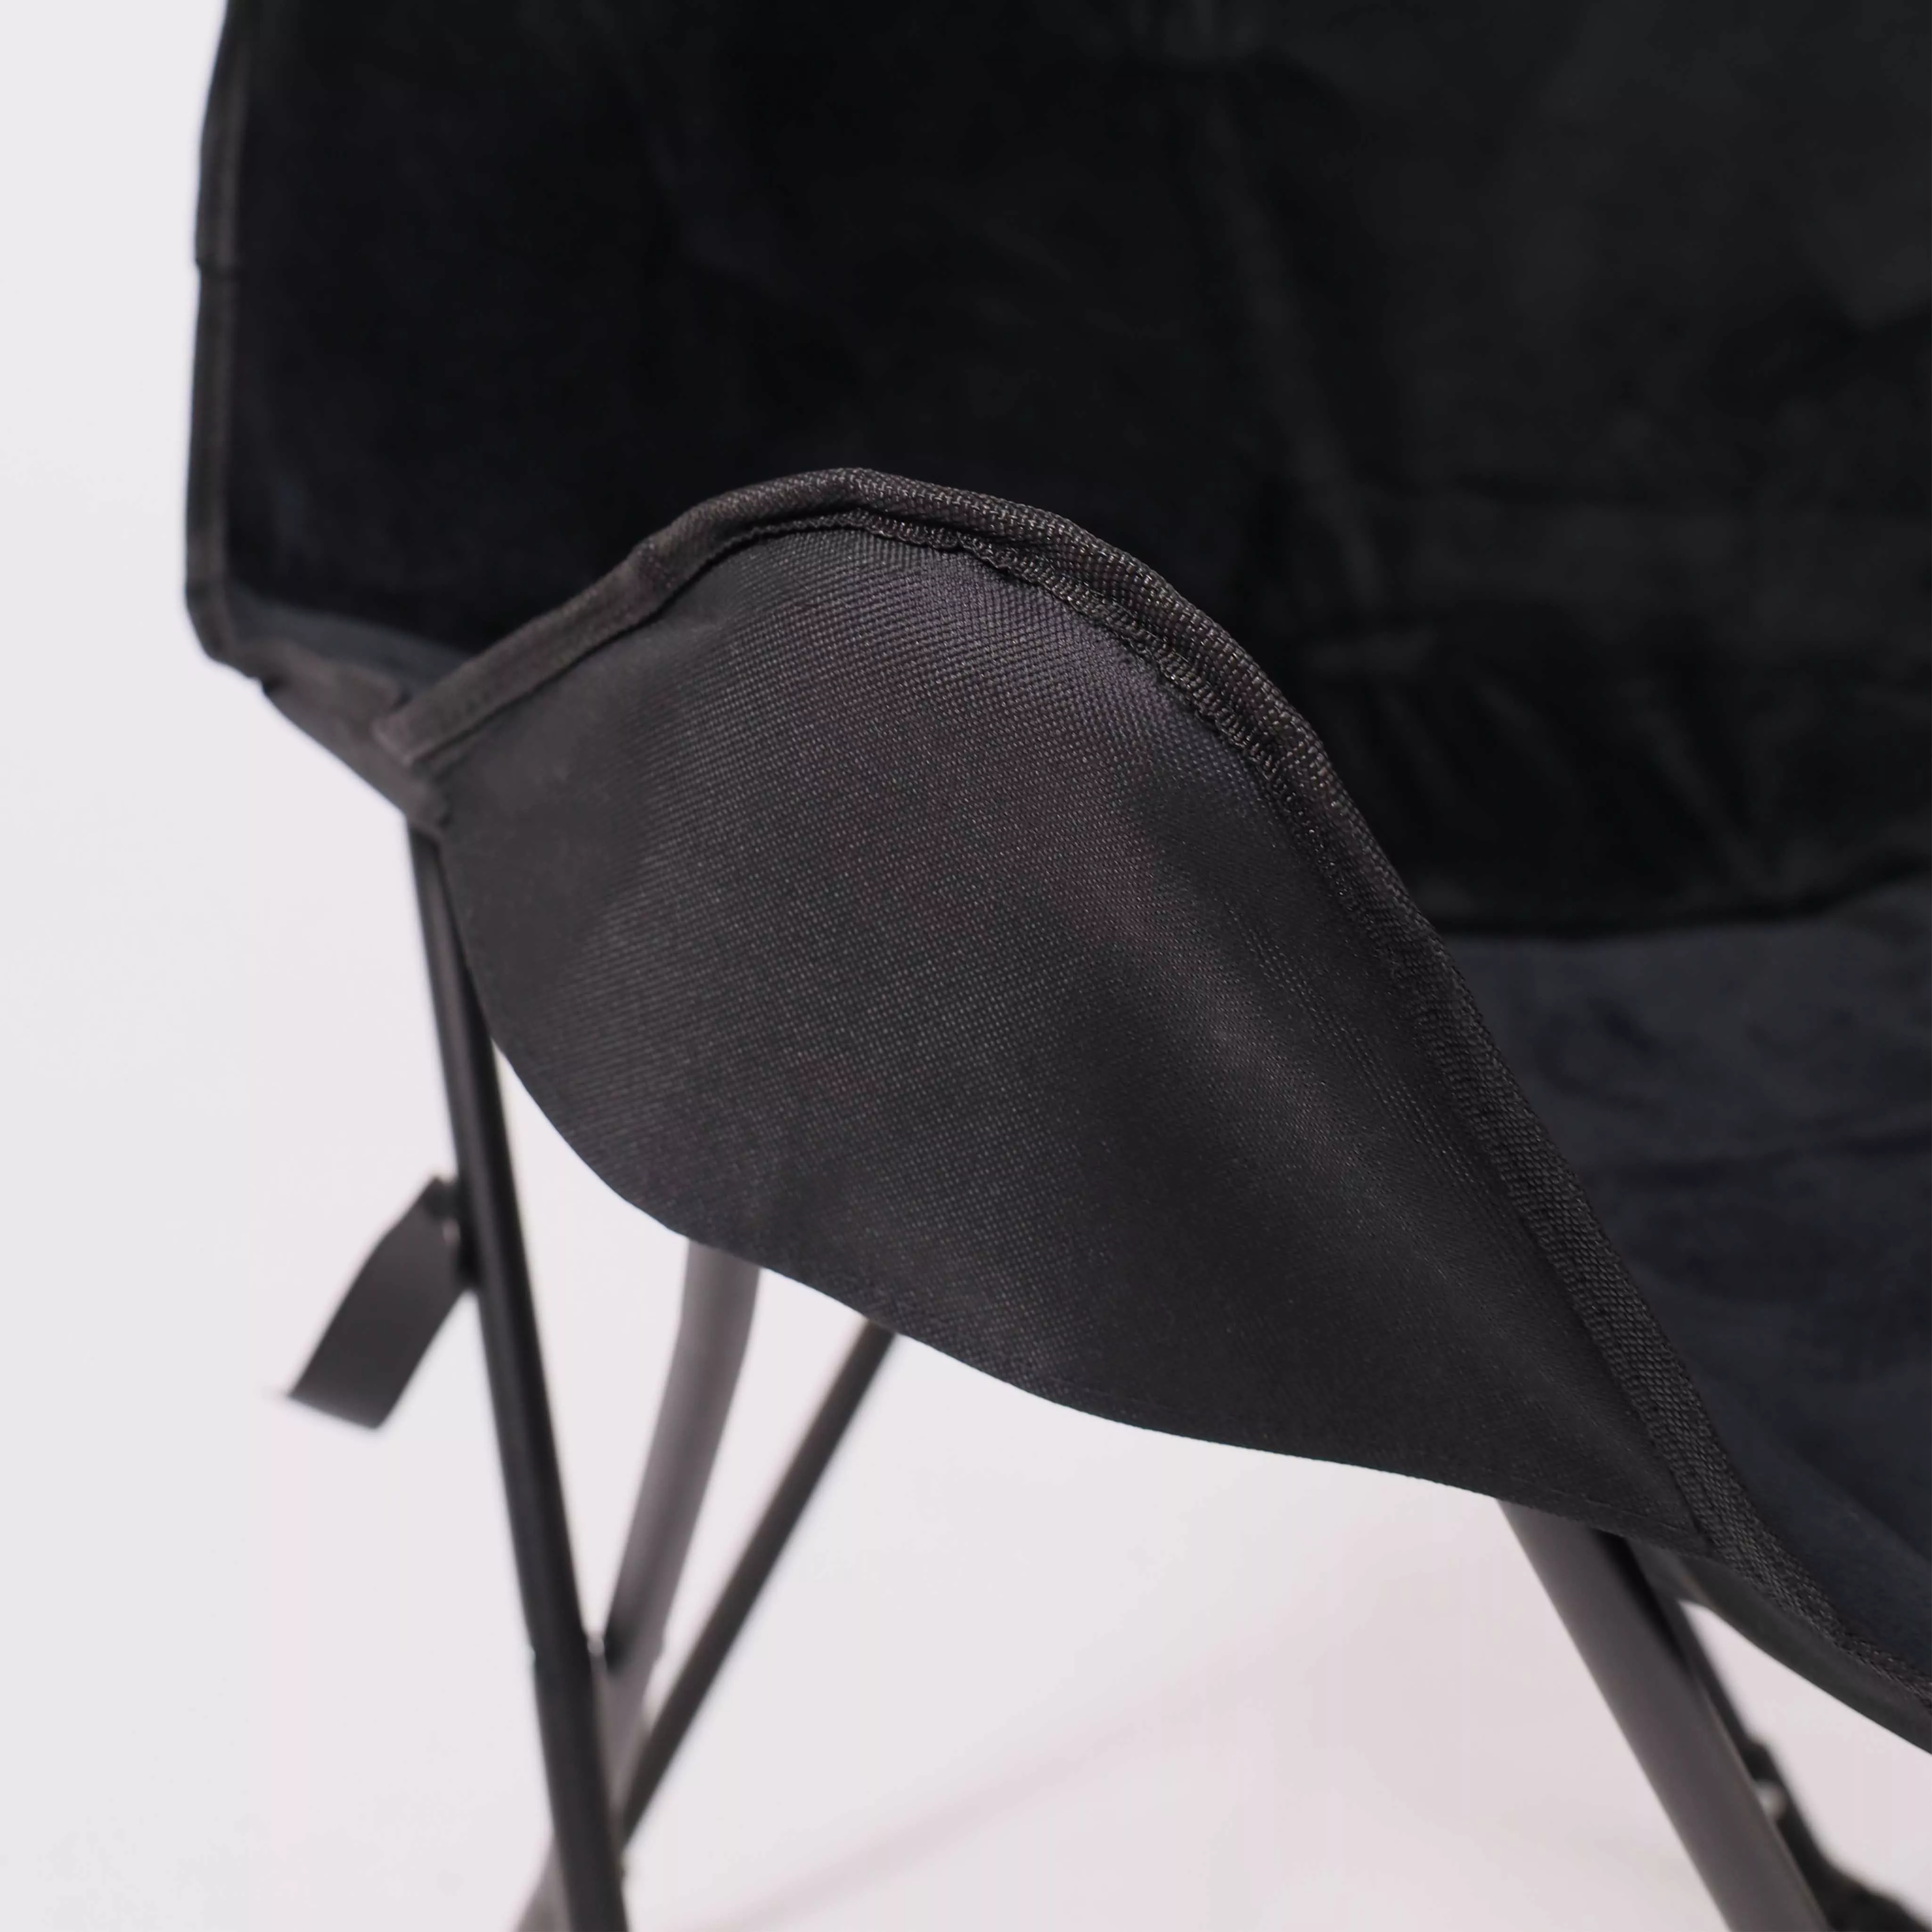 Кресло складное MAGGY черный ткань 86925